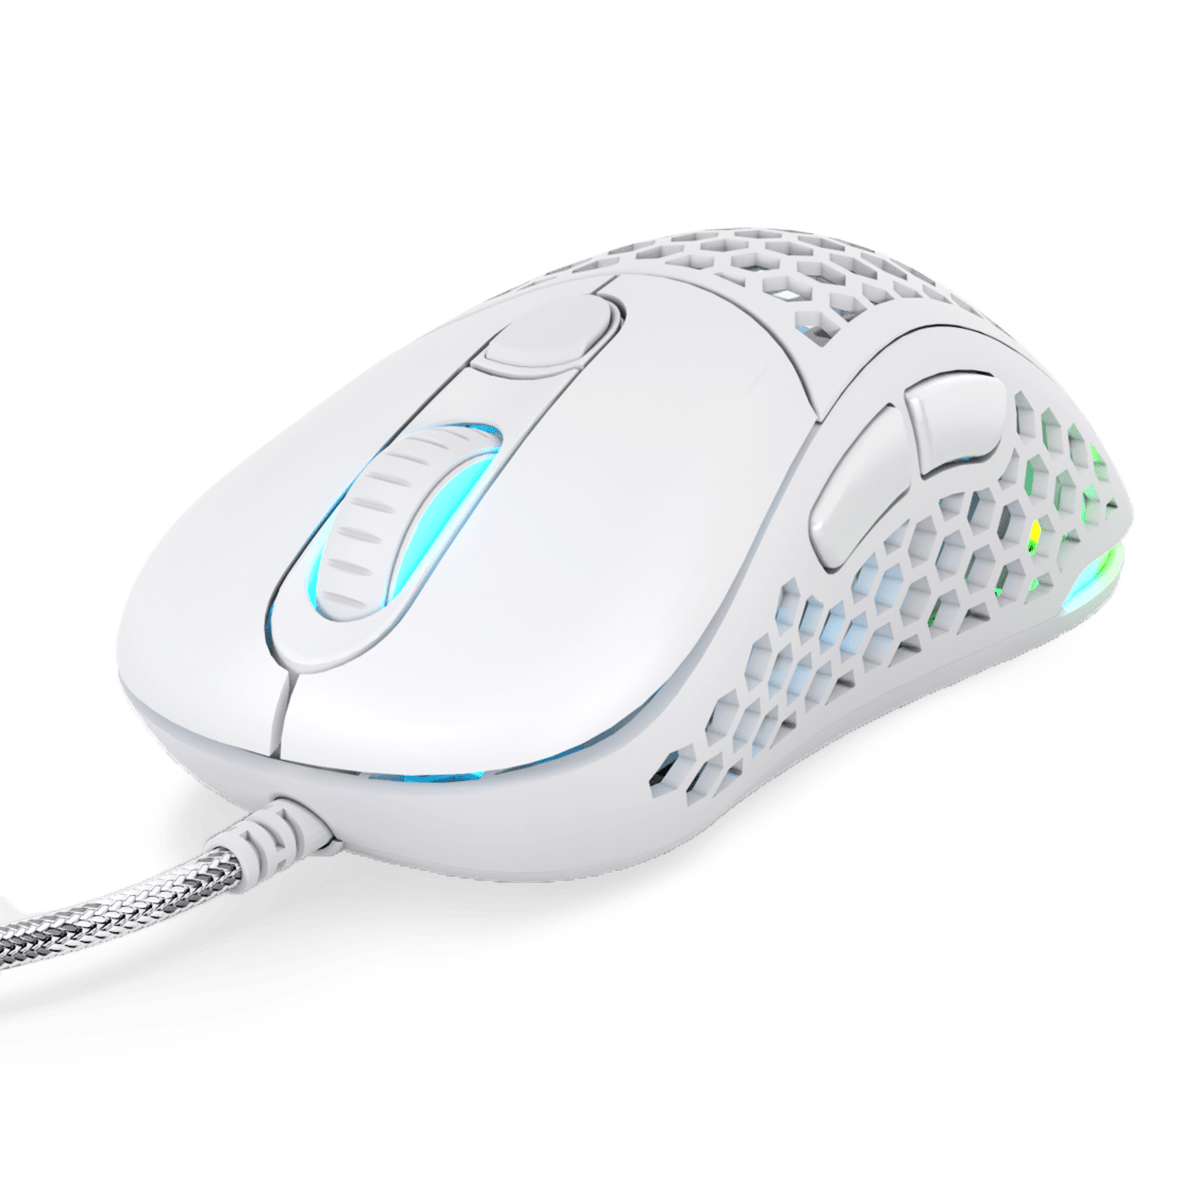 Ultra Custom Ergo Gaming Mouse - Pwnage Wired Custom Ergonomic Mouse